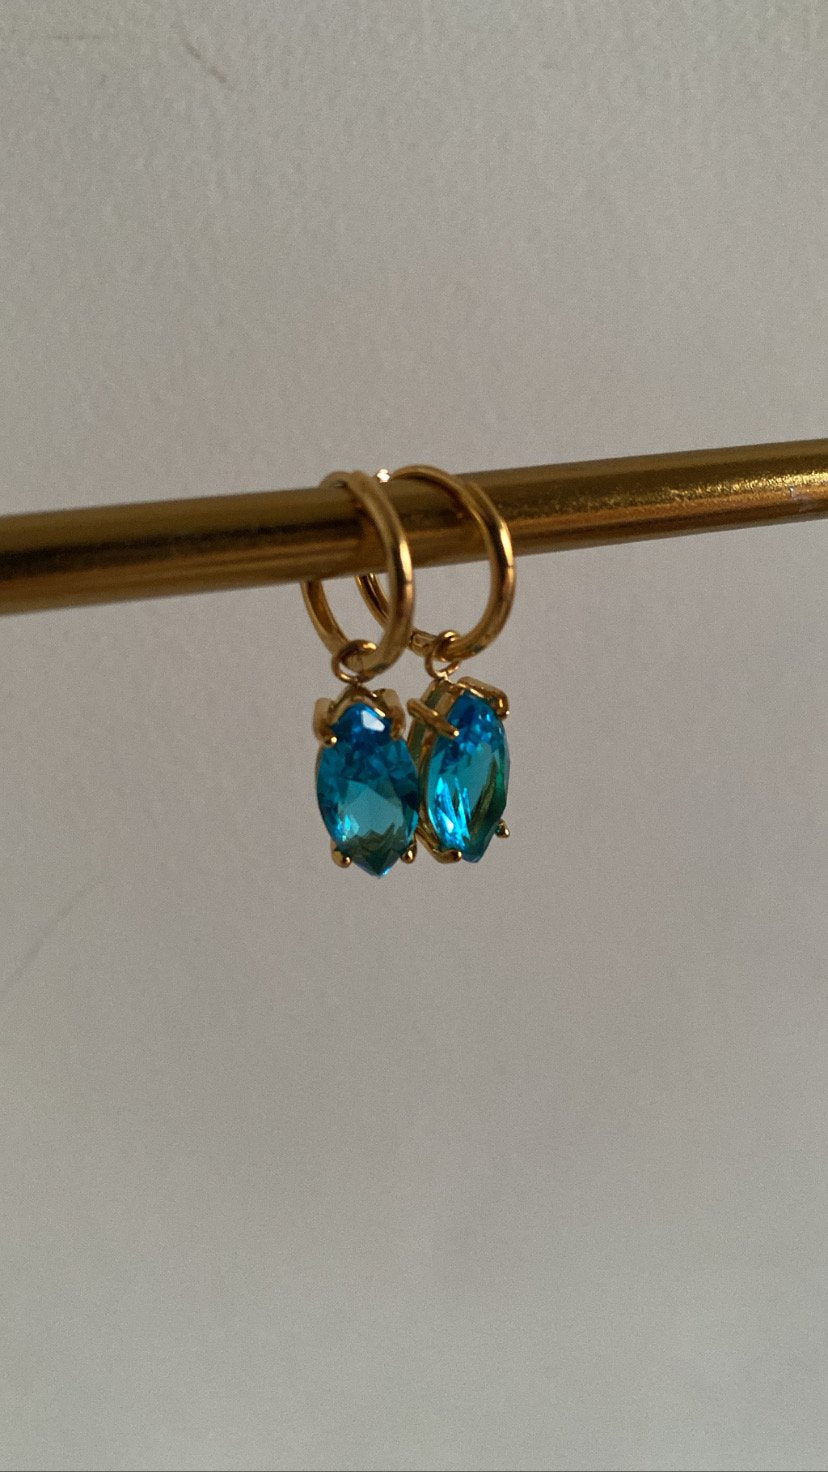 Tampa earrings